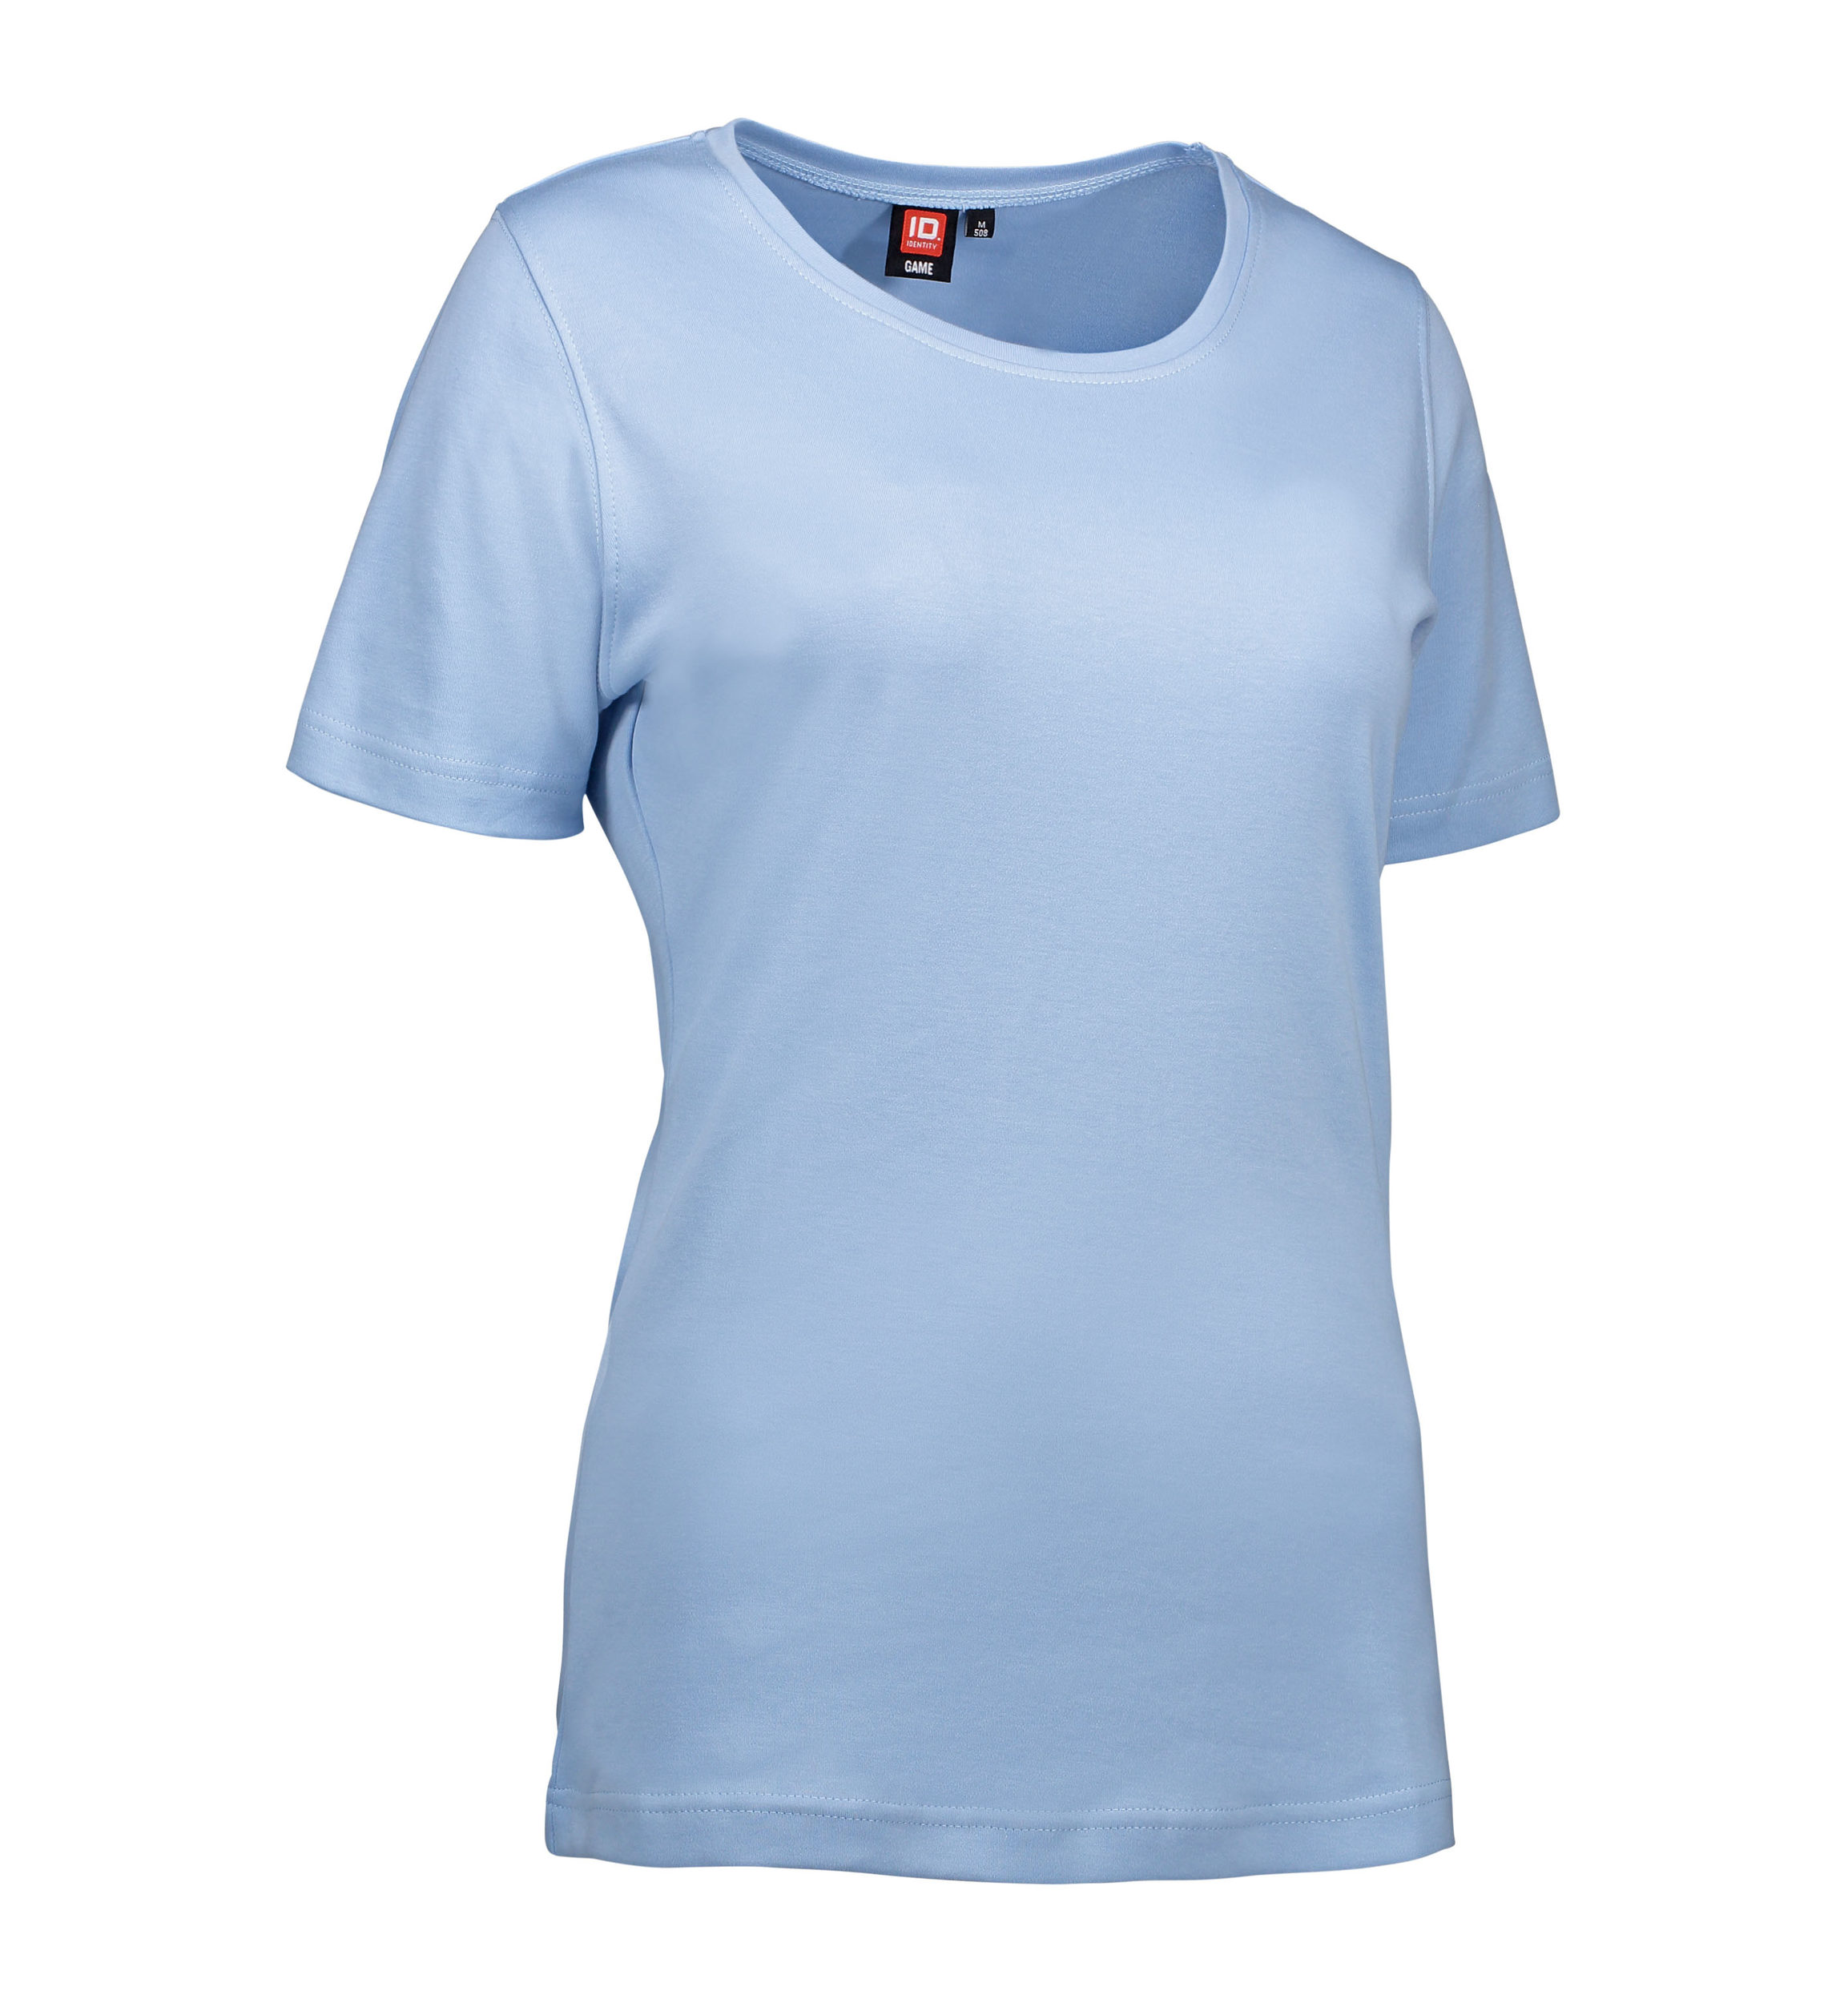 Billede af Lyseblå t-shirt med rund hals til damer - XL hos Sygeplejebutikken.dk